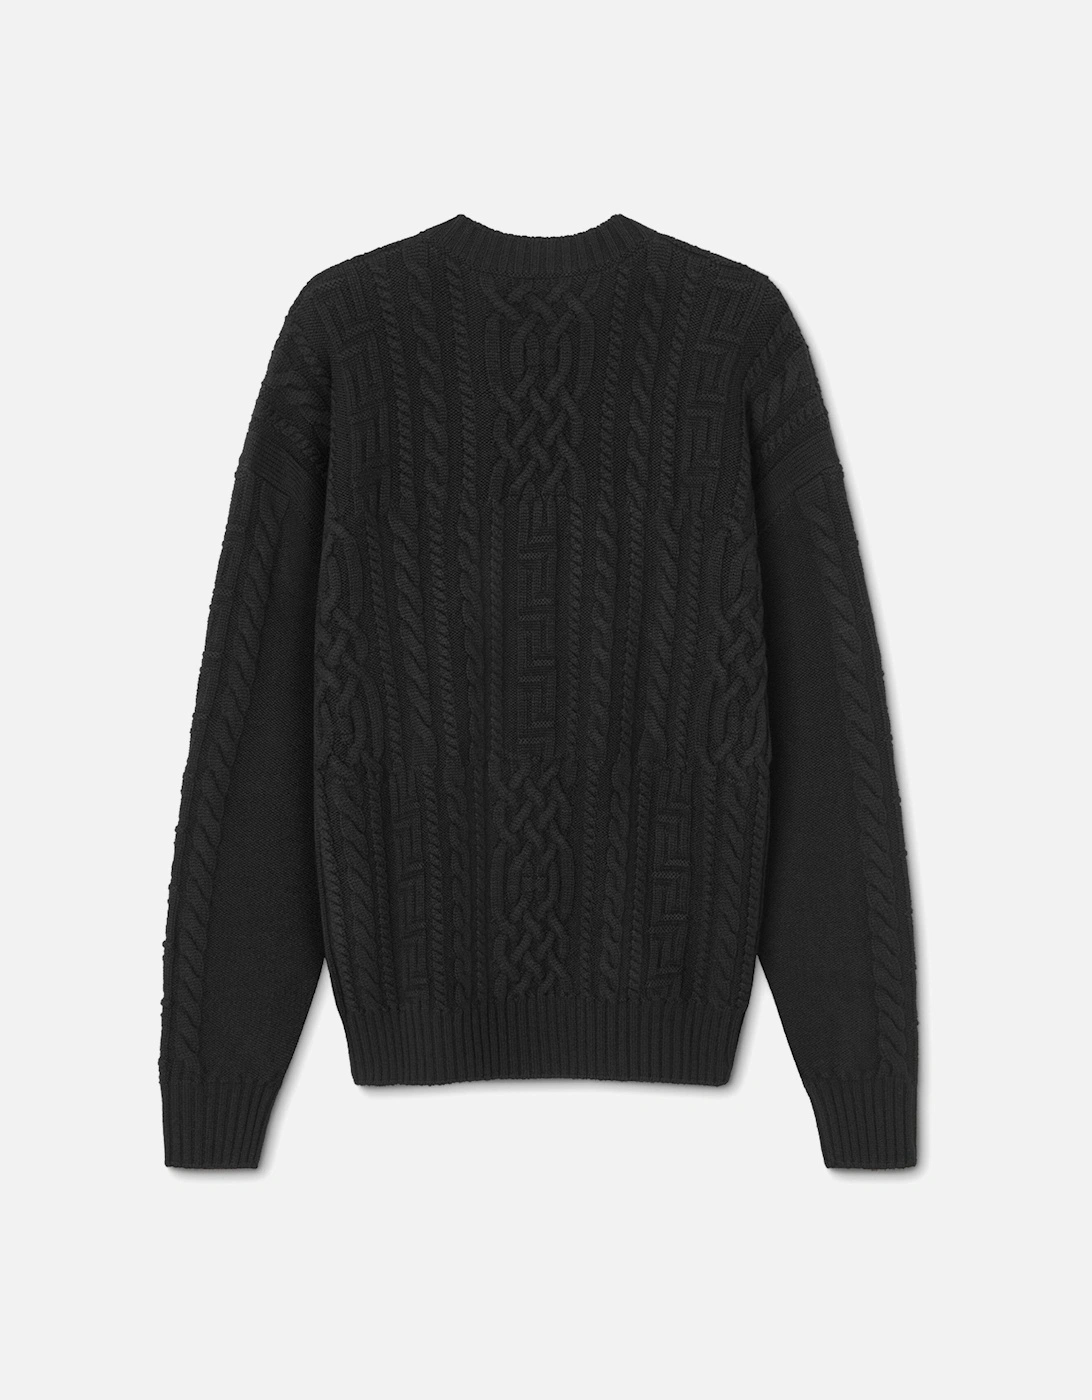 Medusa Embroidery Sweater Black